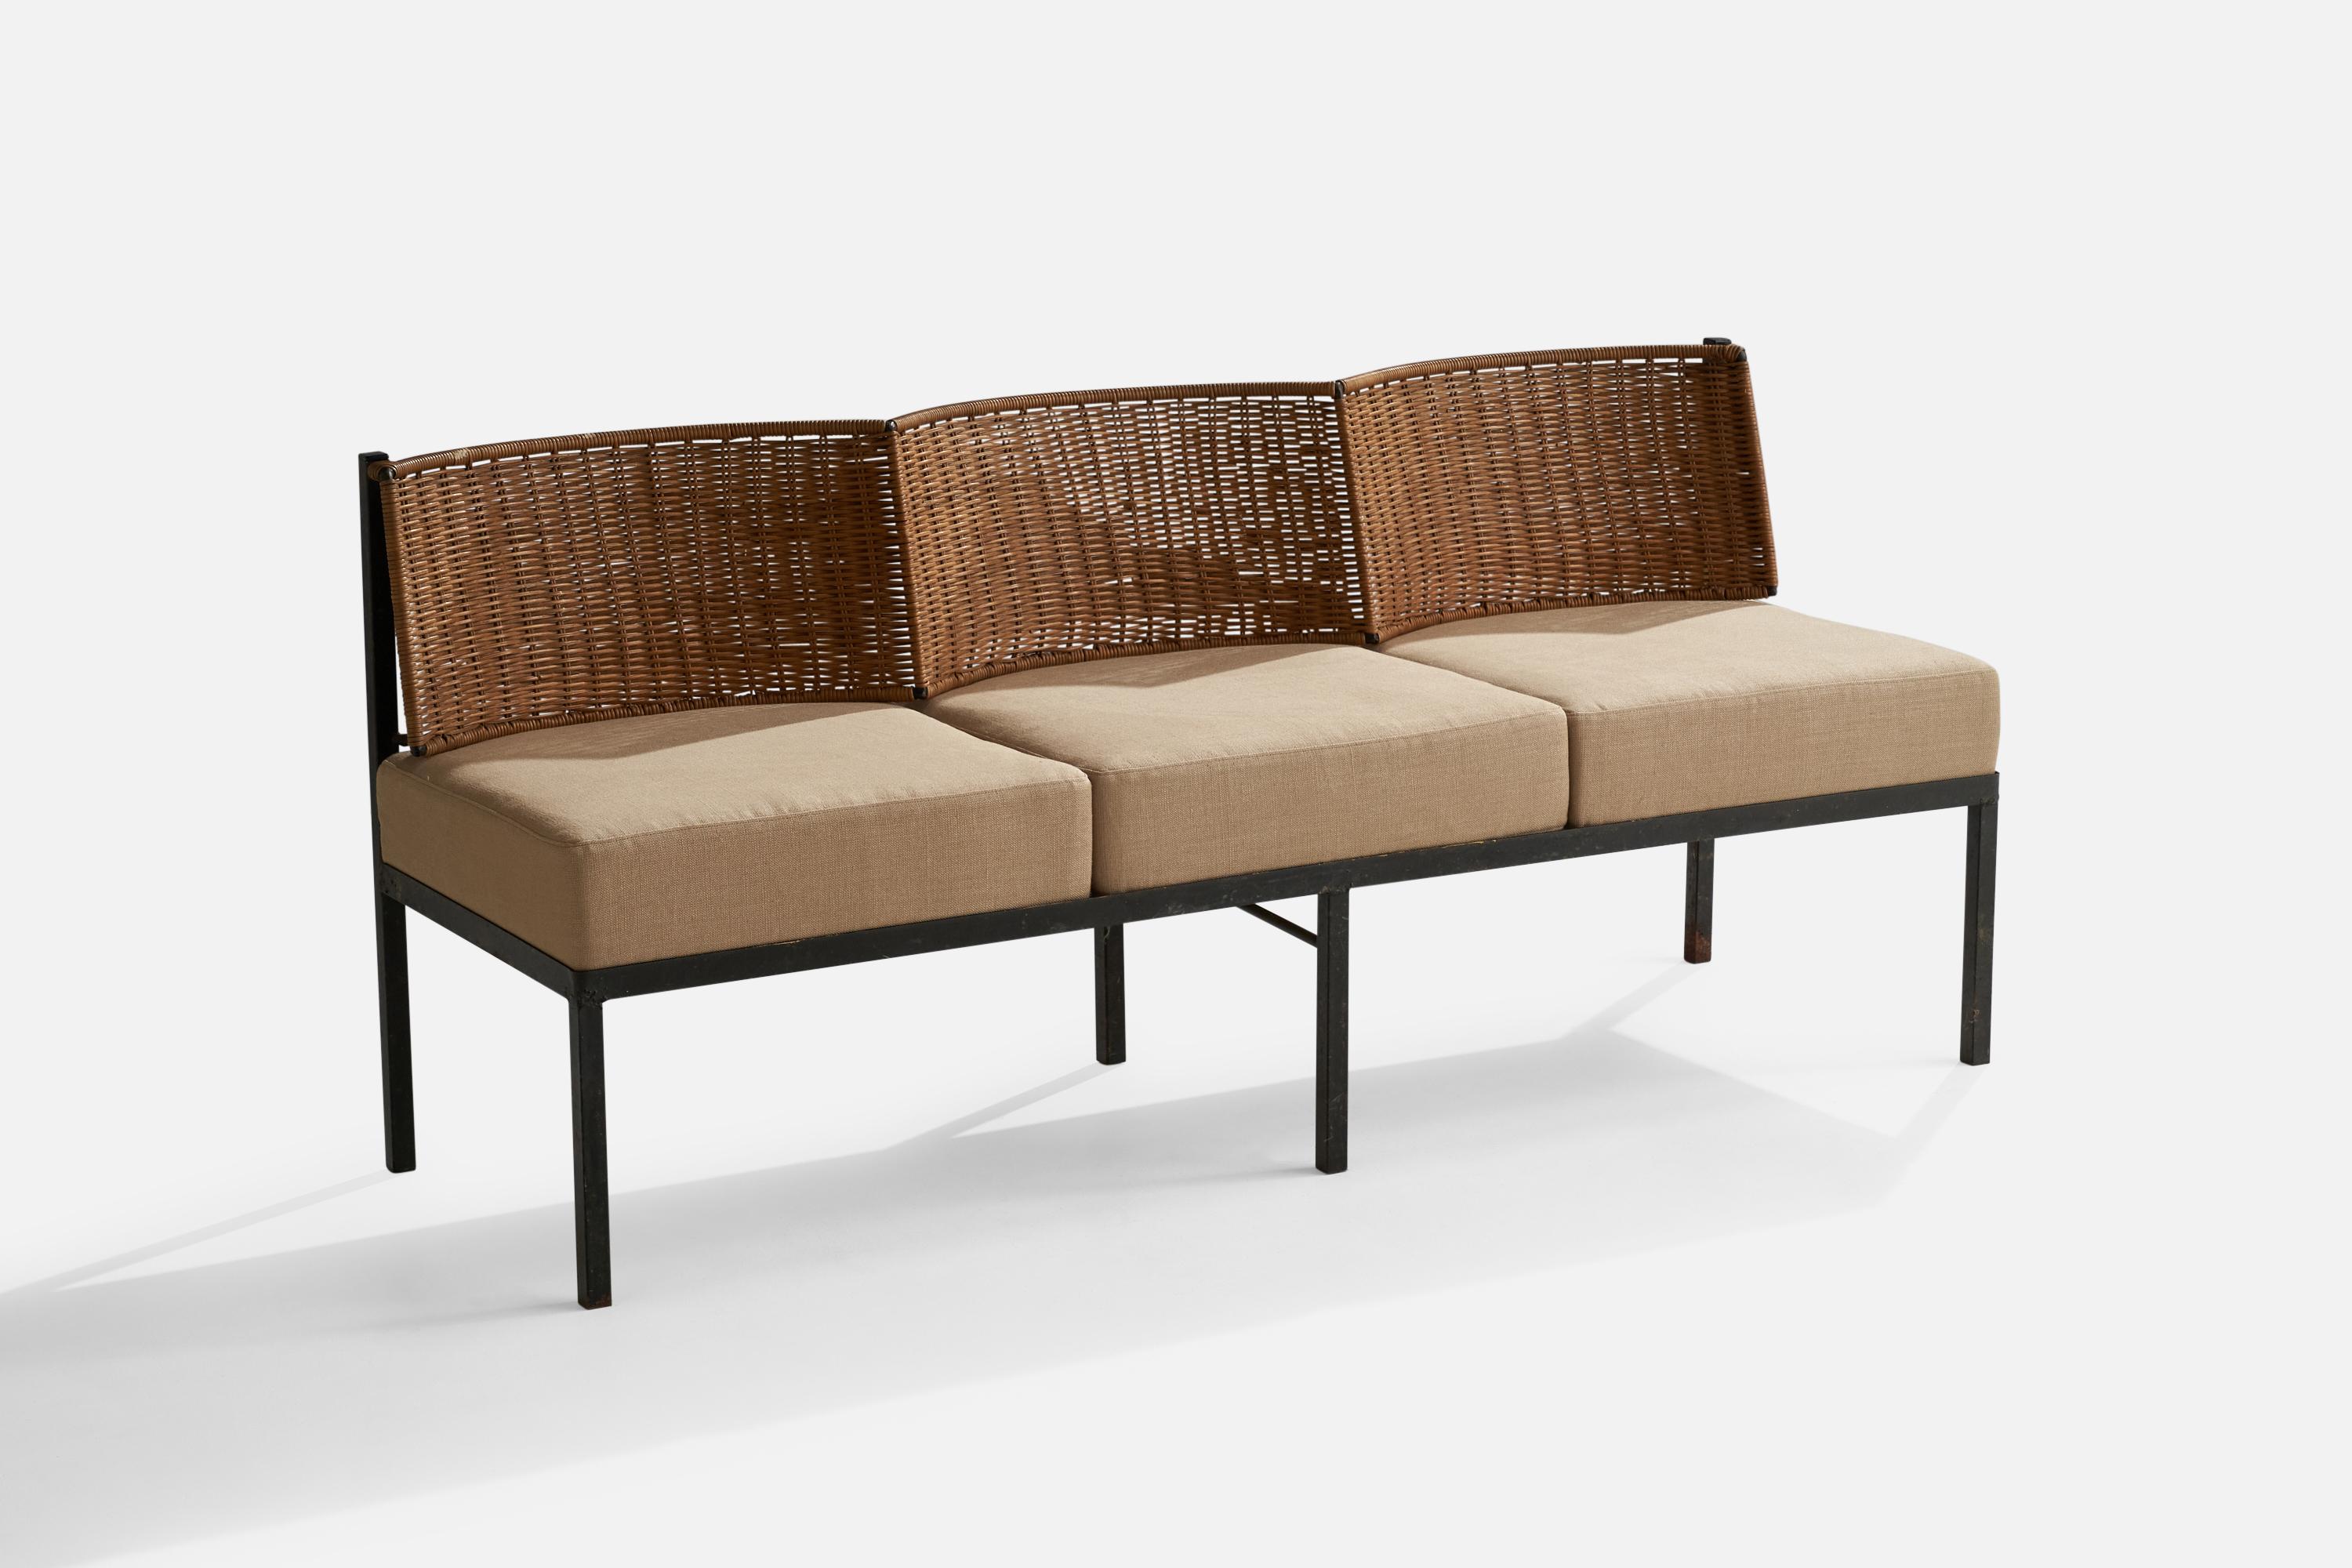 Ein Sofa oder eine Bank aus schwarz lackiertem Eisen, Rattan und beigem Stoff, entworfen und hergestellt in den USA, ca. 1950er Jahre.

Sitzhöhe 18